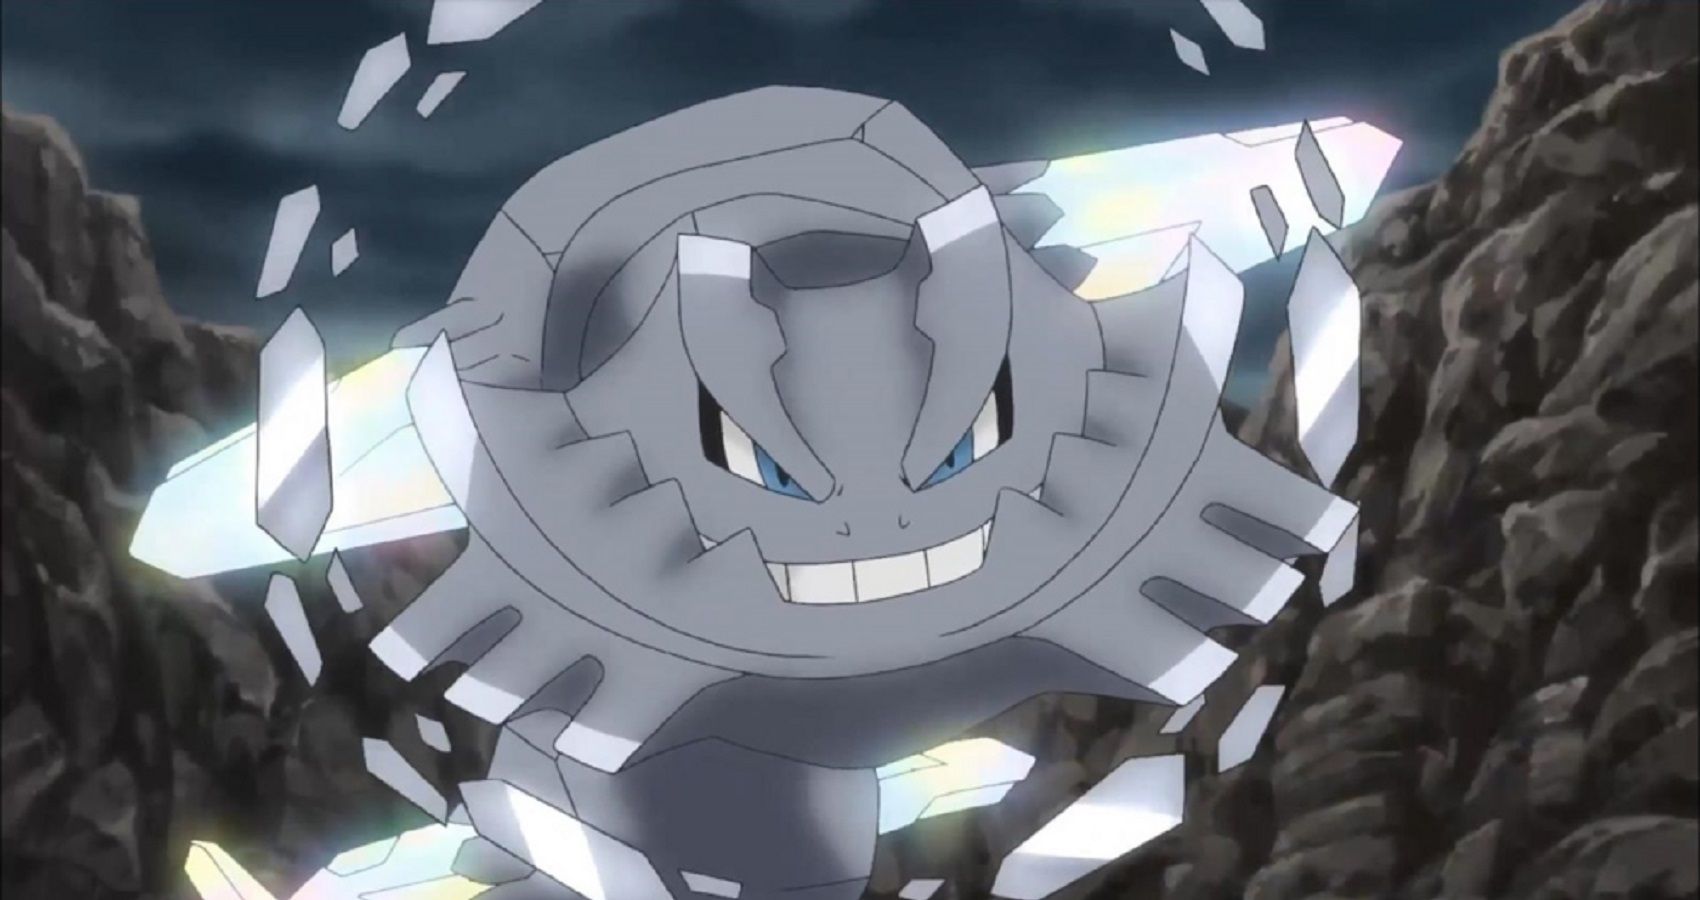 Pokémon: 10 Best Mega Evolutions In The Anime, Ranked